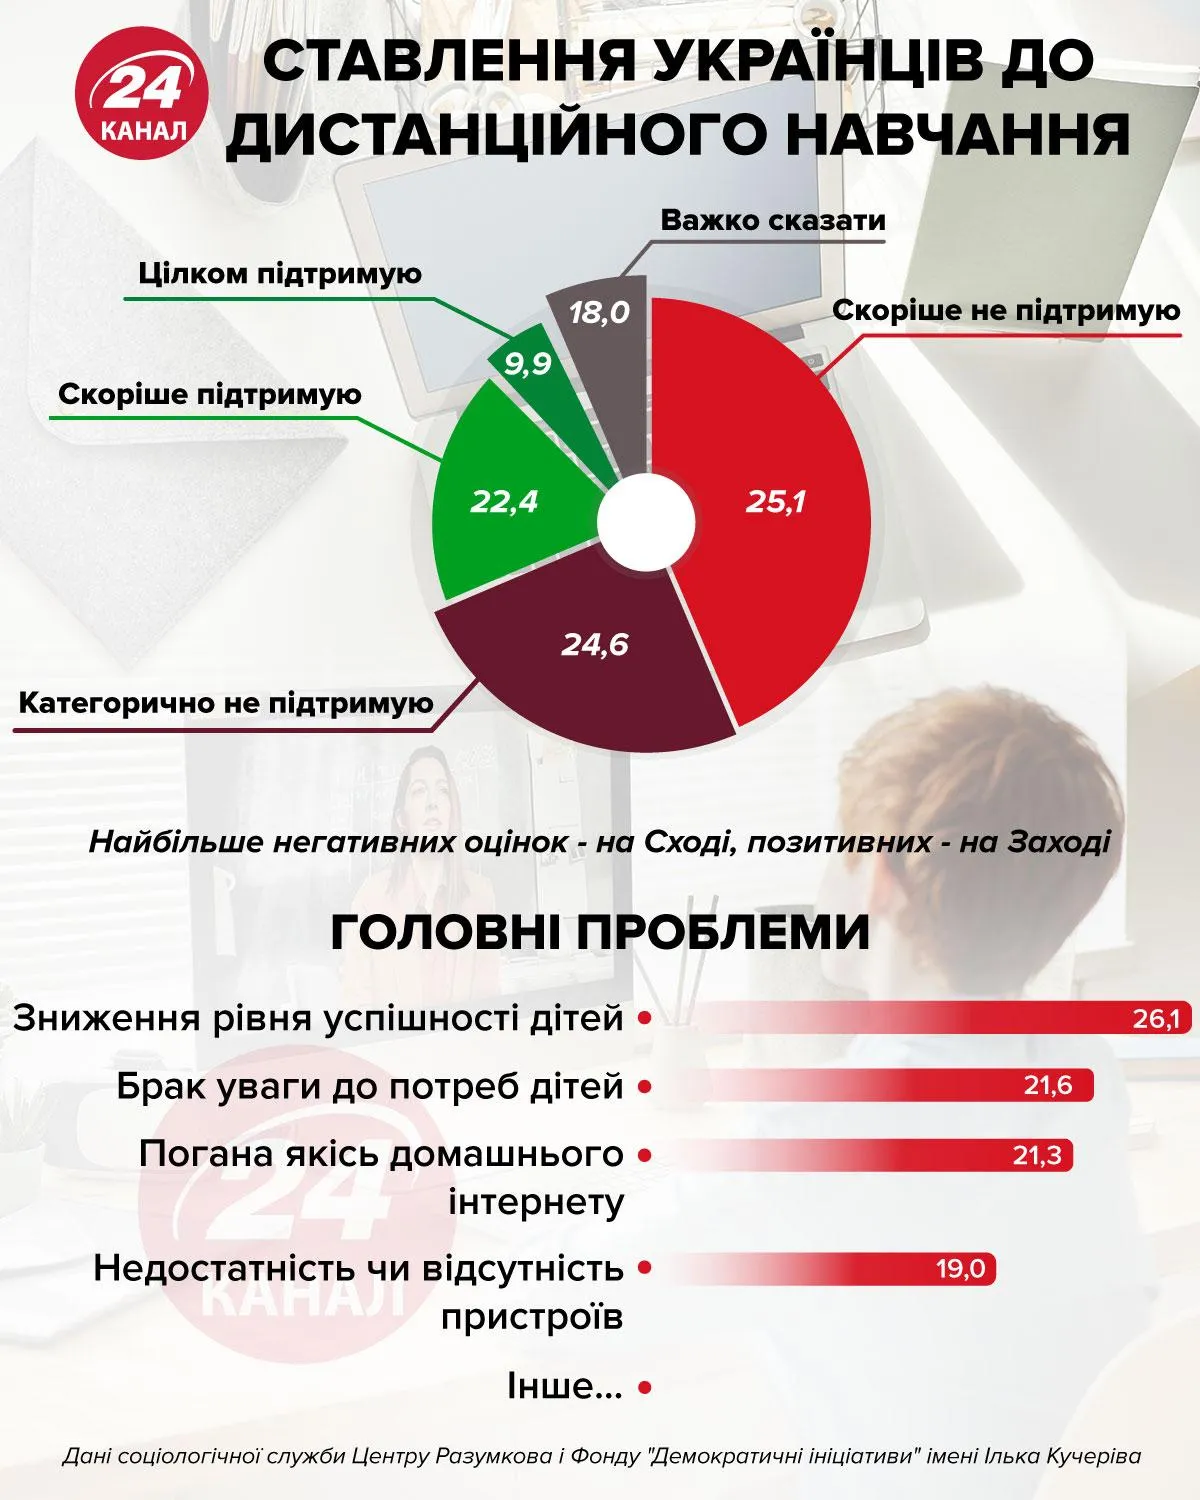 Що думають українці про дистанційне навчання інфографіка 24 канал